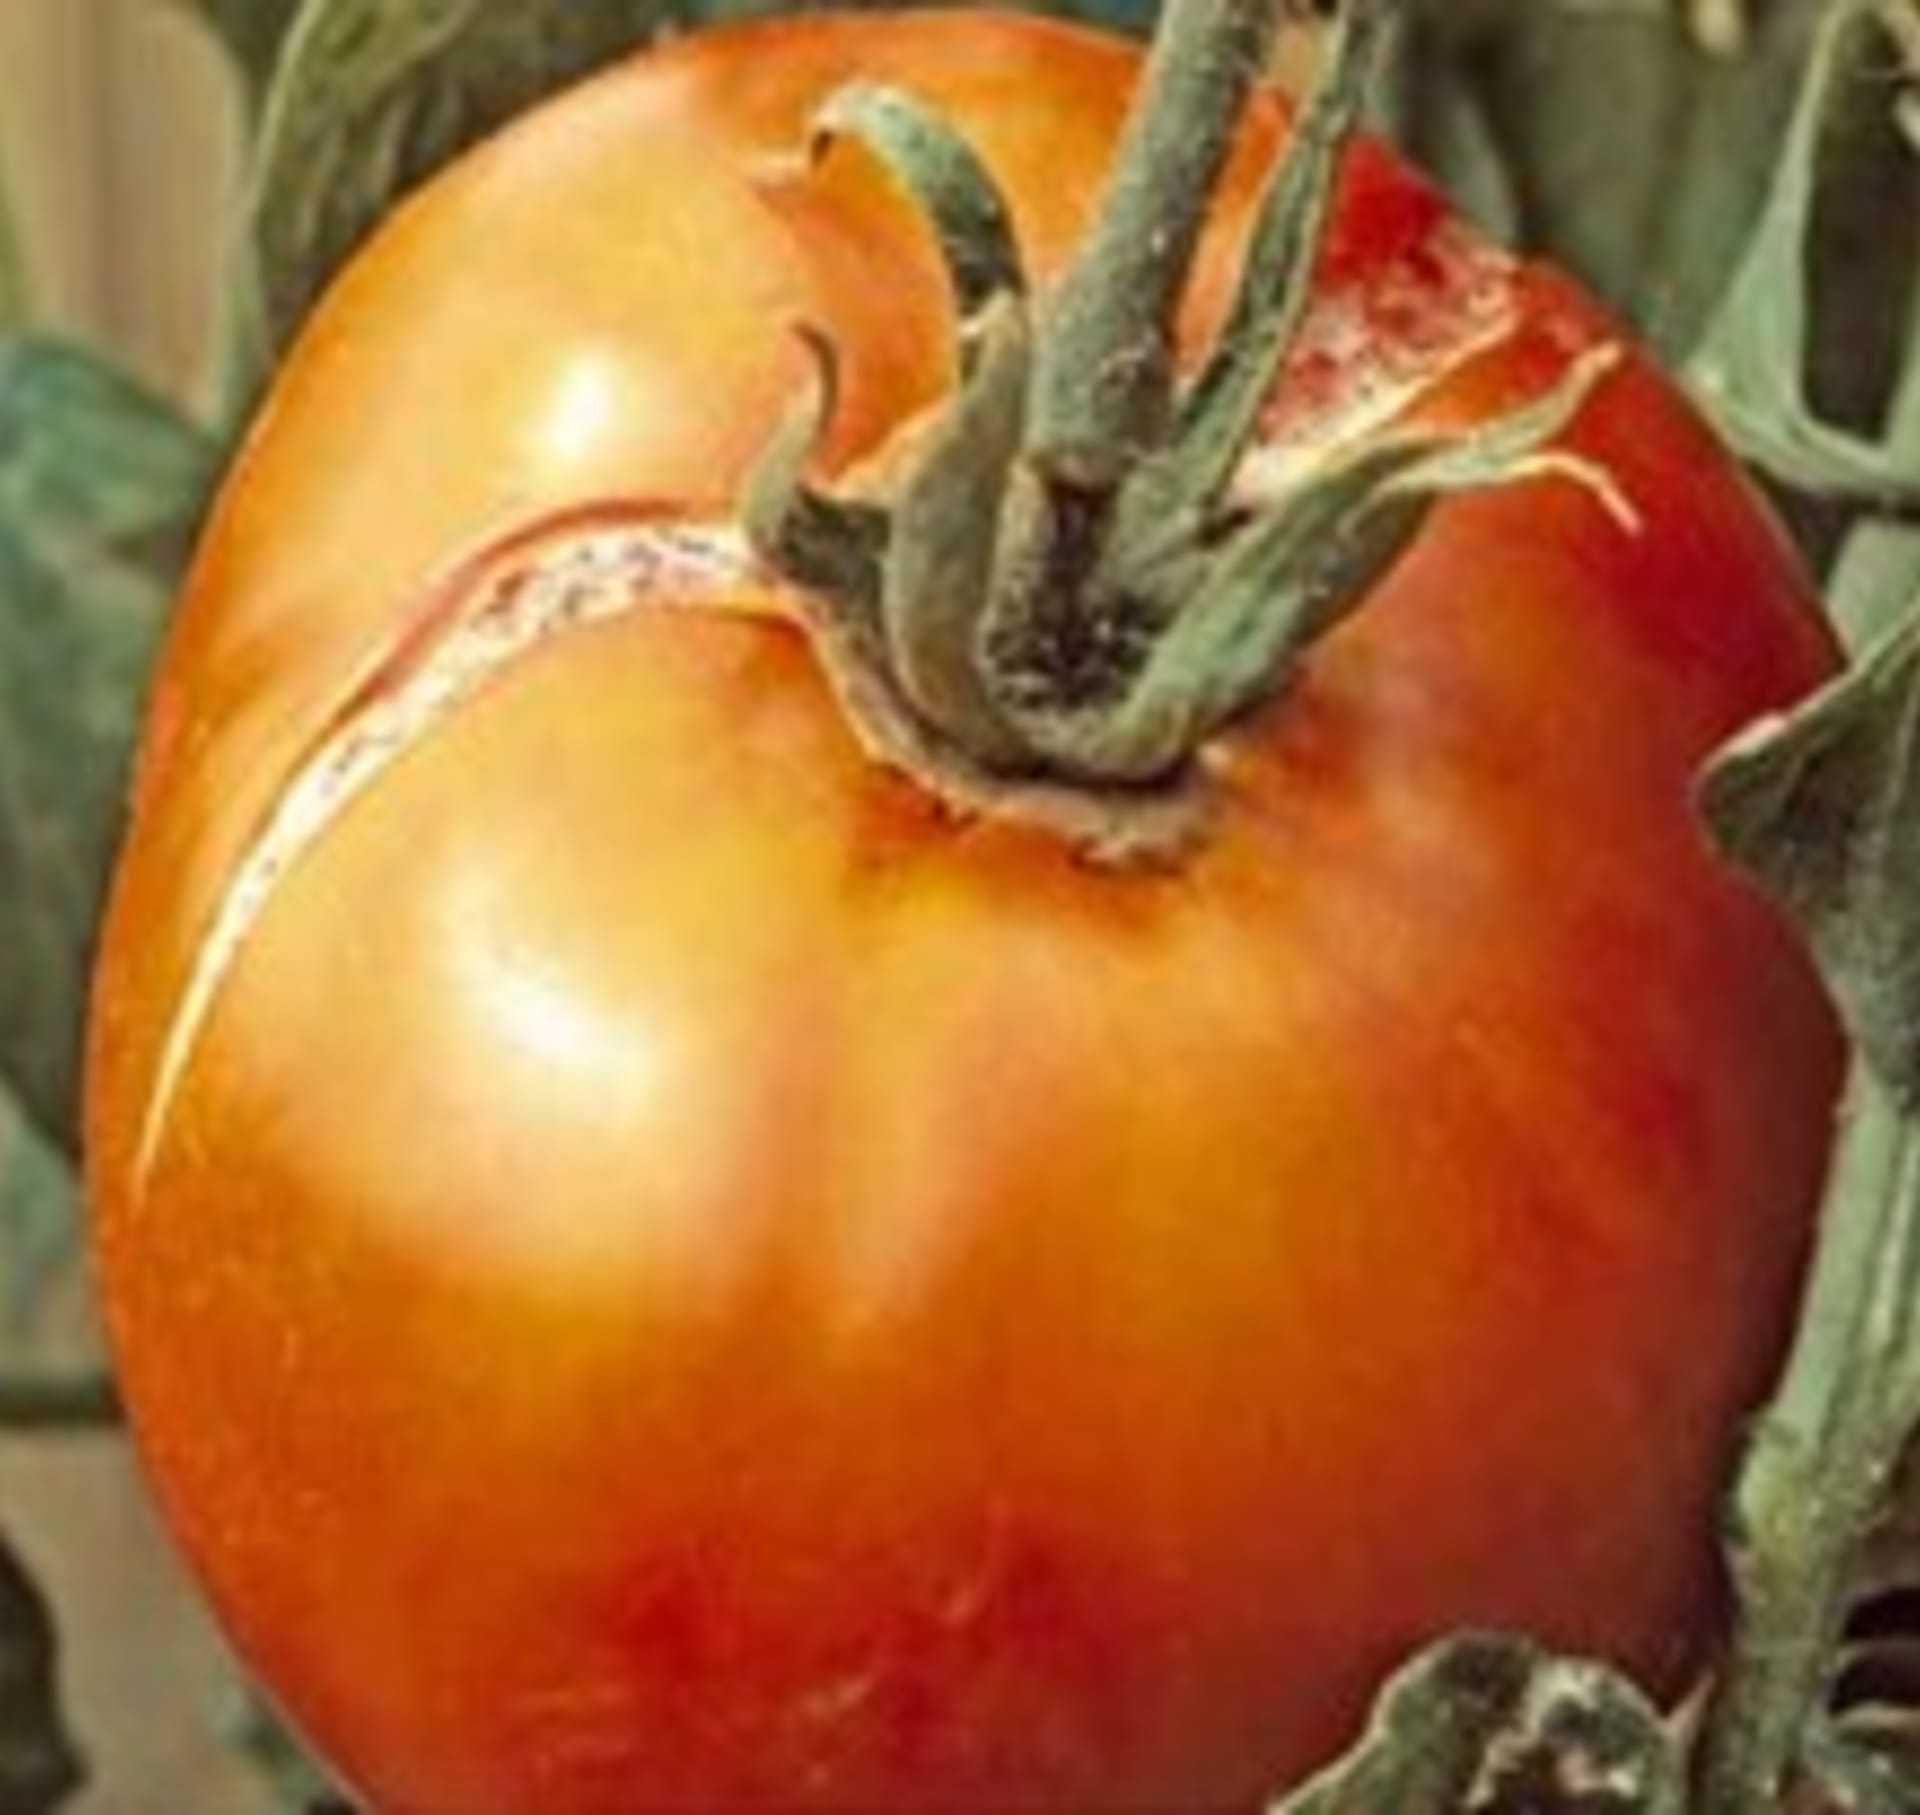 Střídání vlhké a suché půdy způsobuje u rajčat praskání plodů.